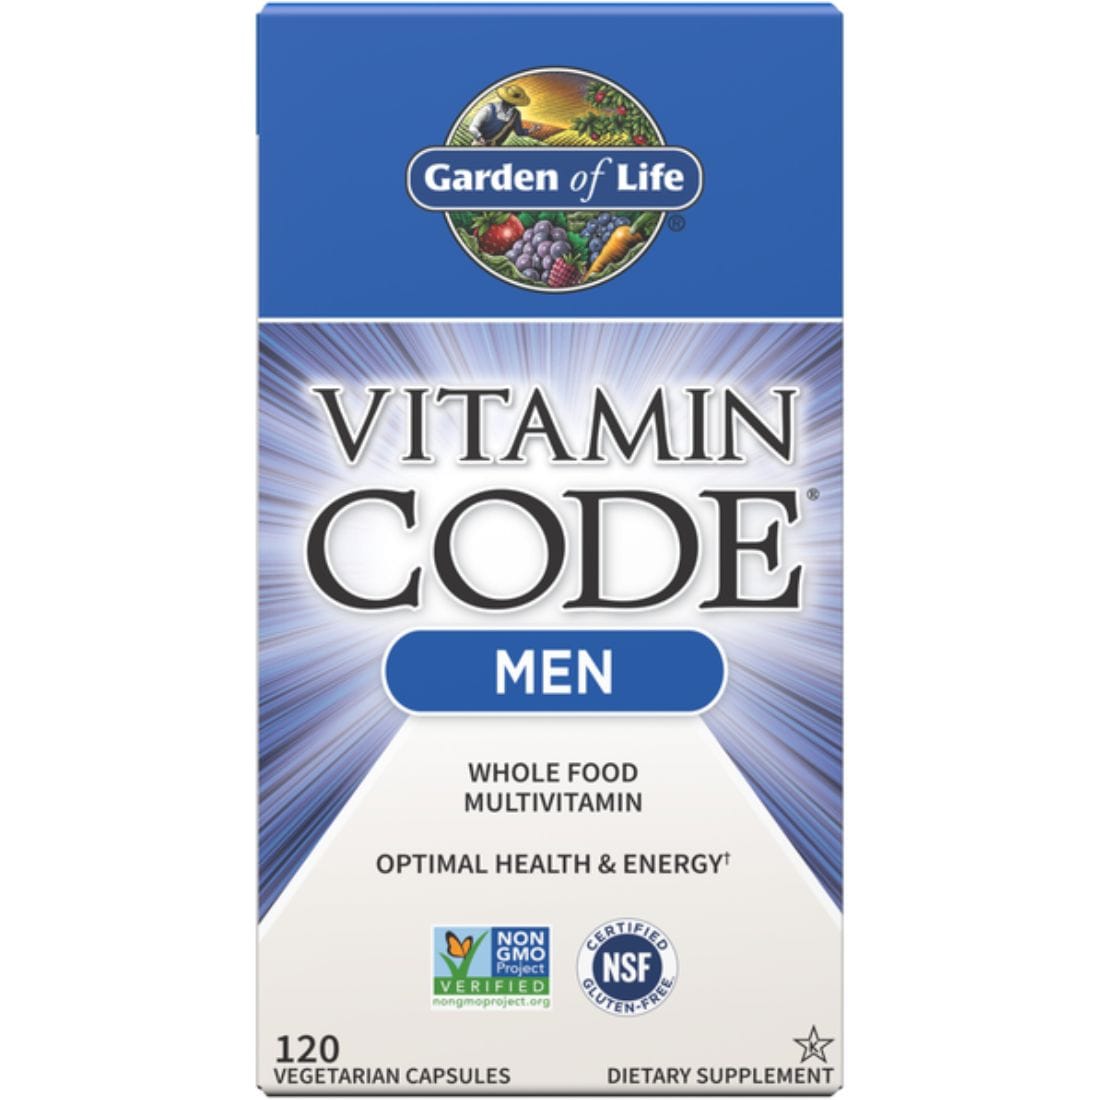 Garden Of Life Vitamin Code Men's Multivitamin